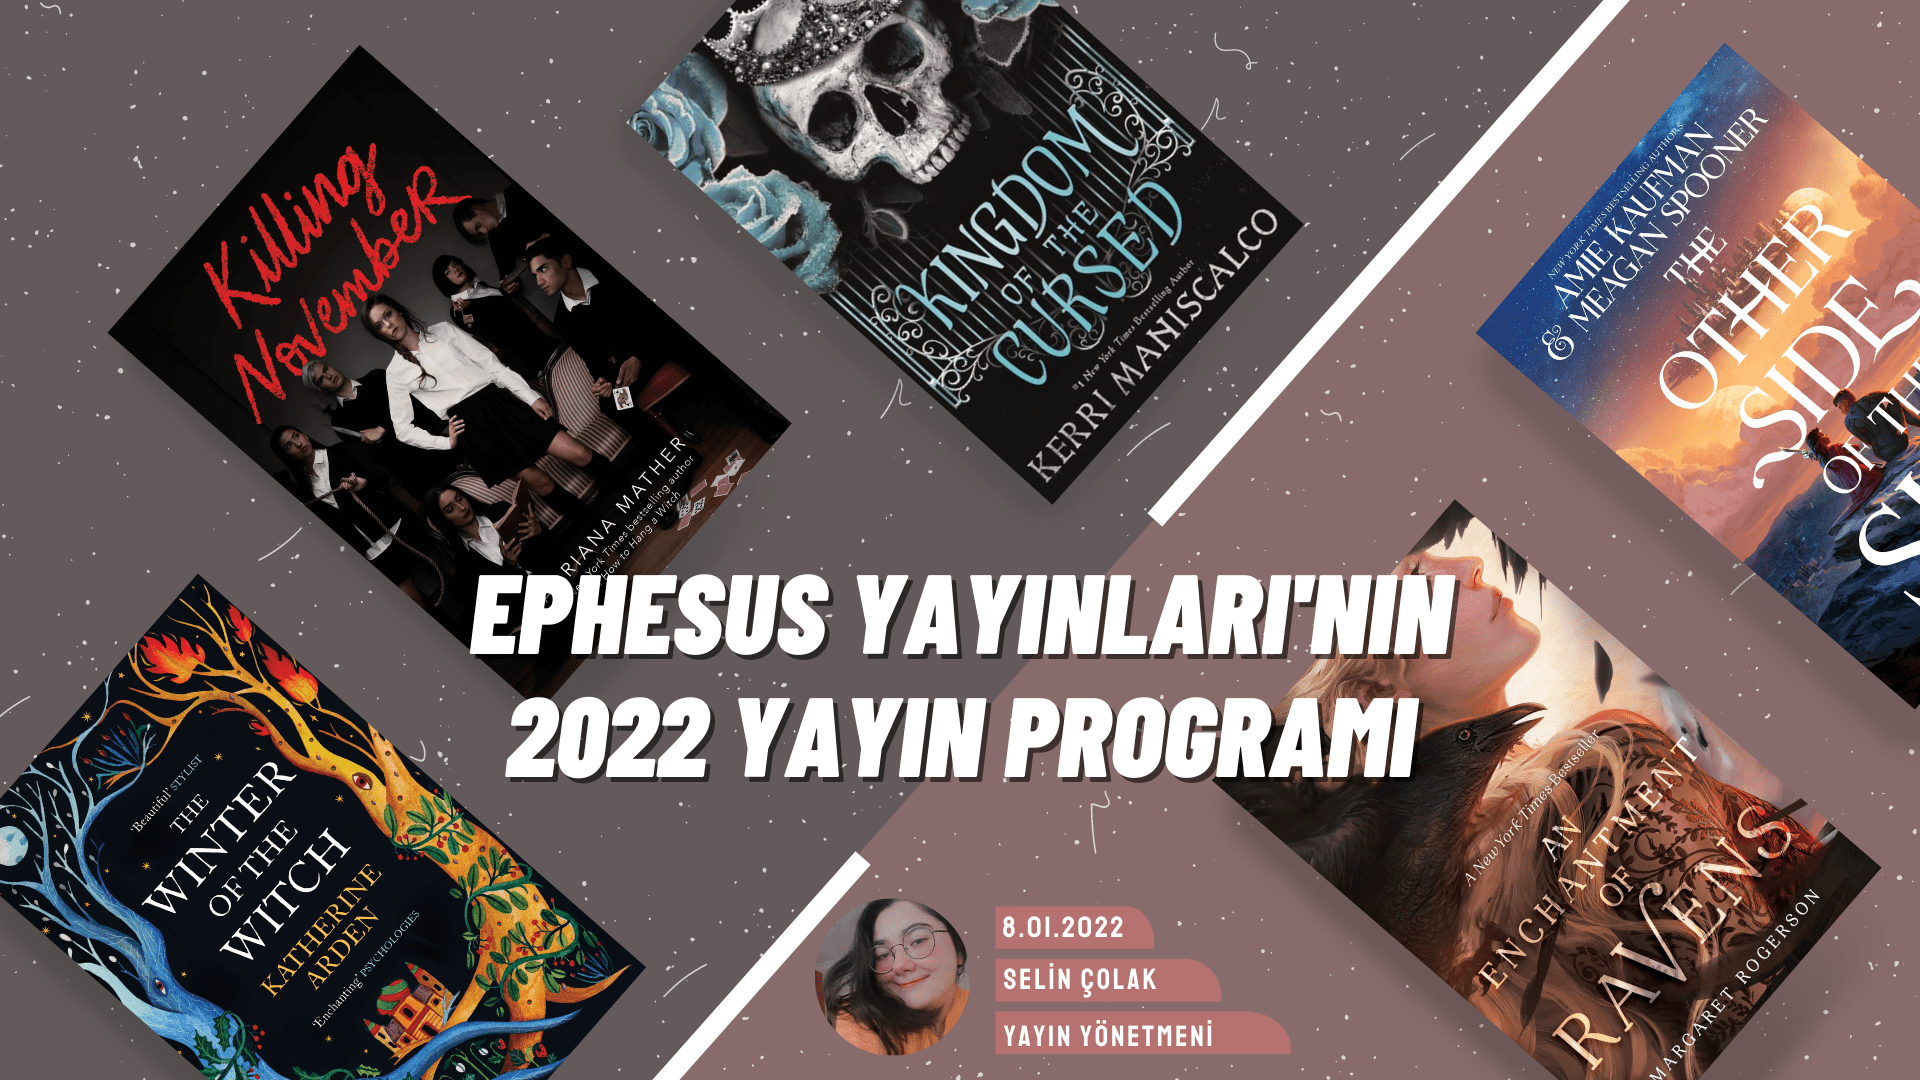 Ephesus Yayınları 2022 Yılında Hangi Kitapları Çevireceğini Duyurdu!